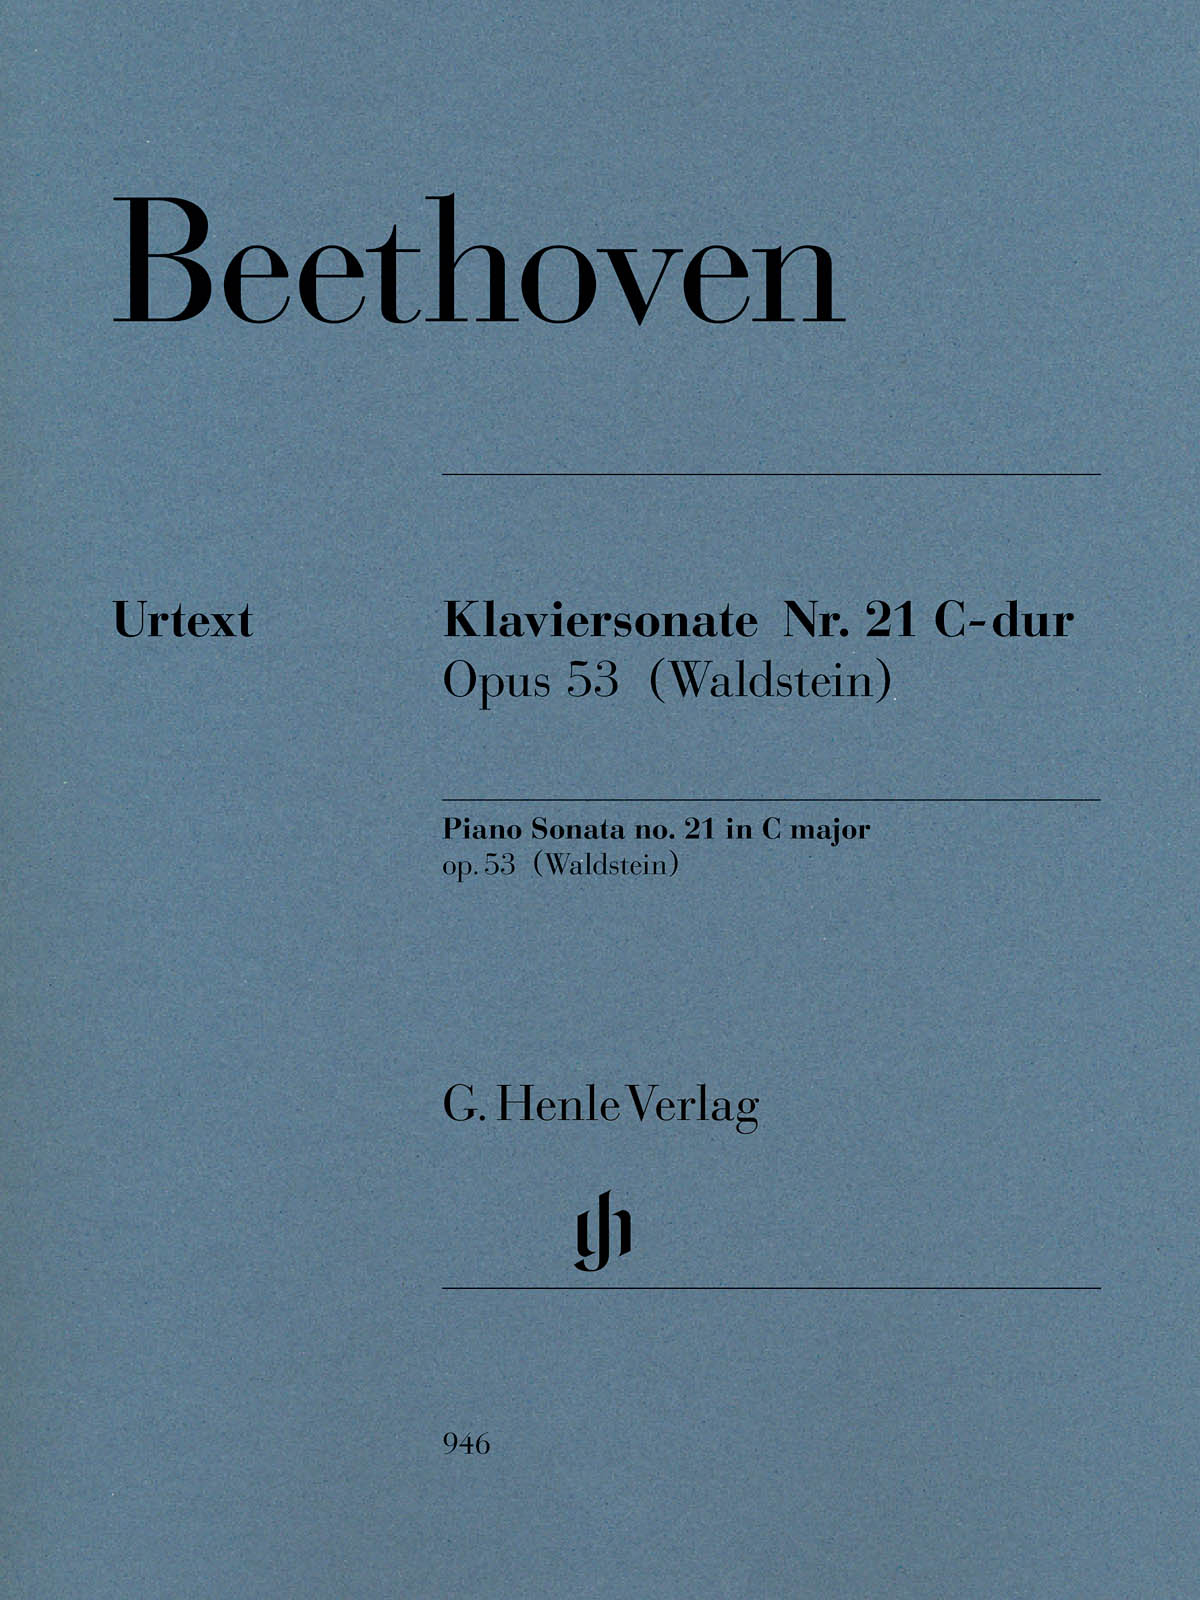 Beethoven: Piano Sonata No. 21 in C Major, Op. 53 (Waldstein)